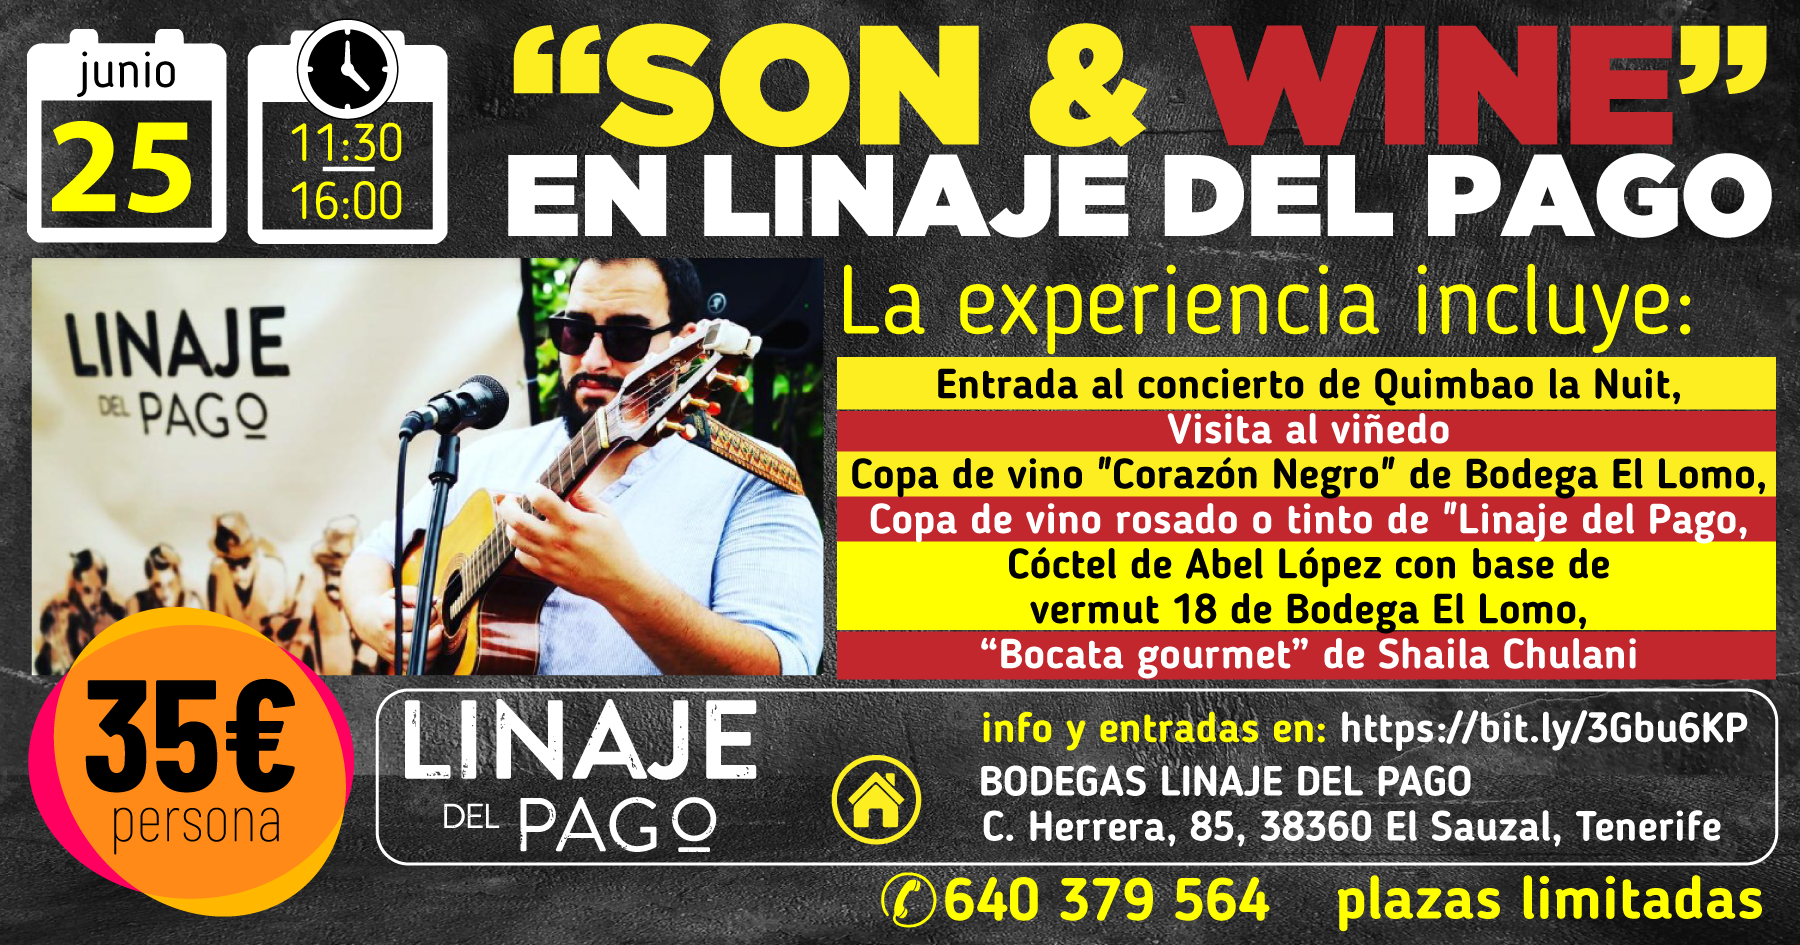 SON & WINE en Linaje del Pago